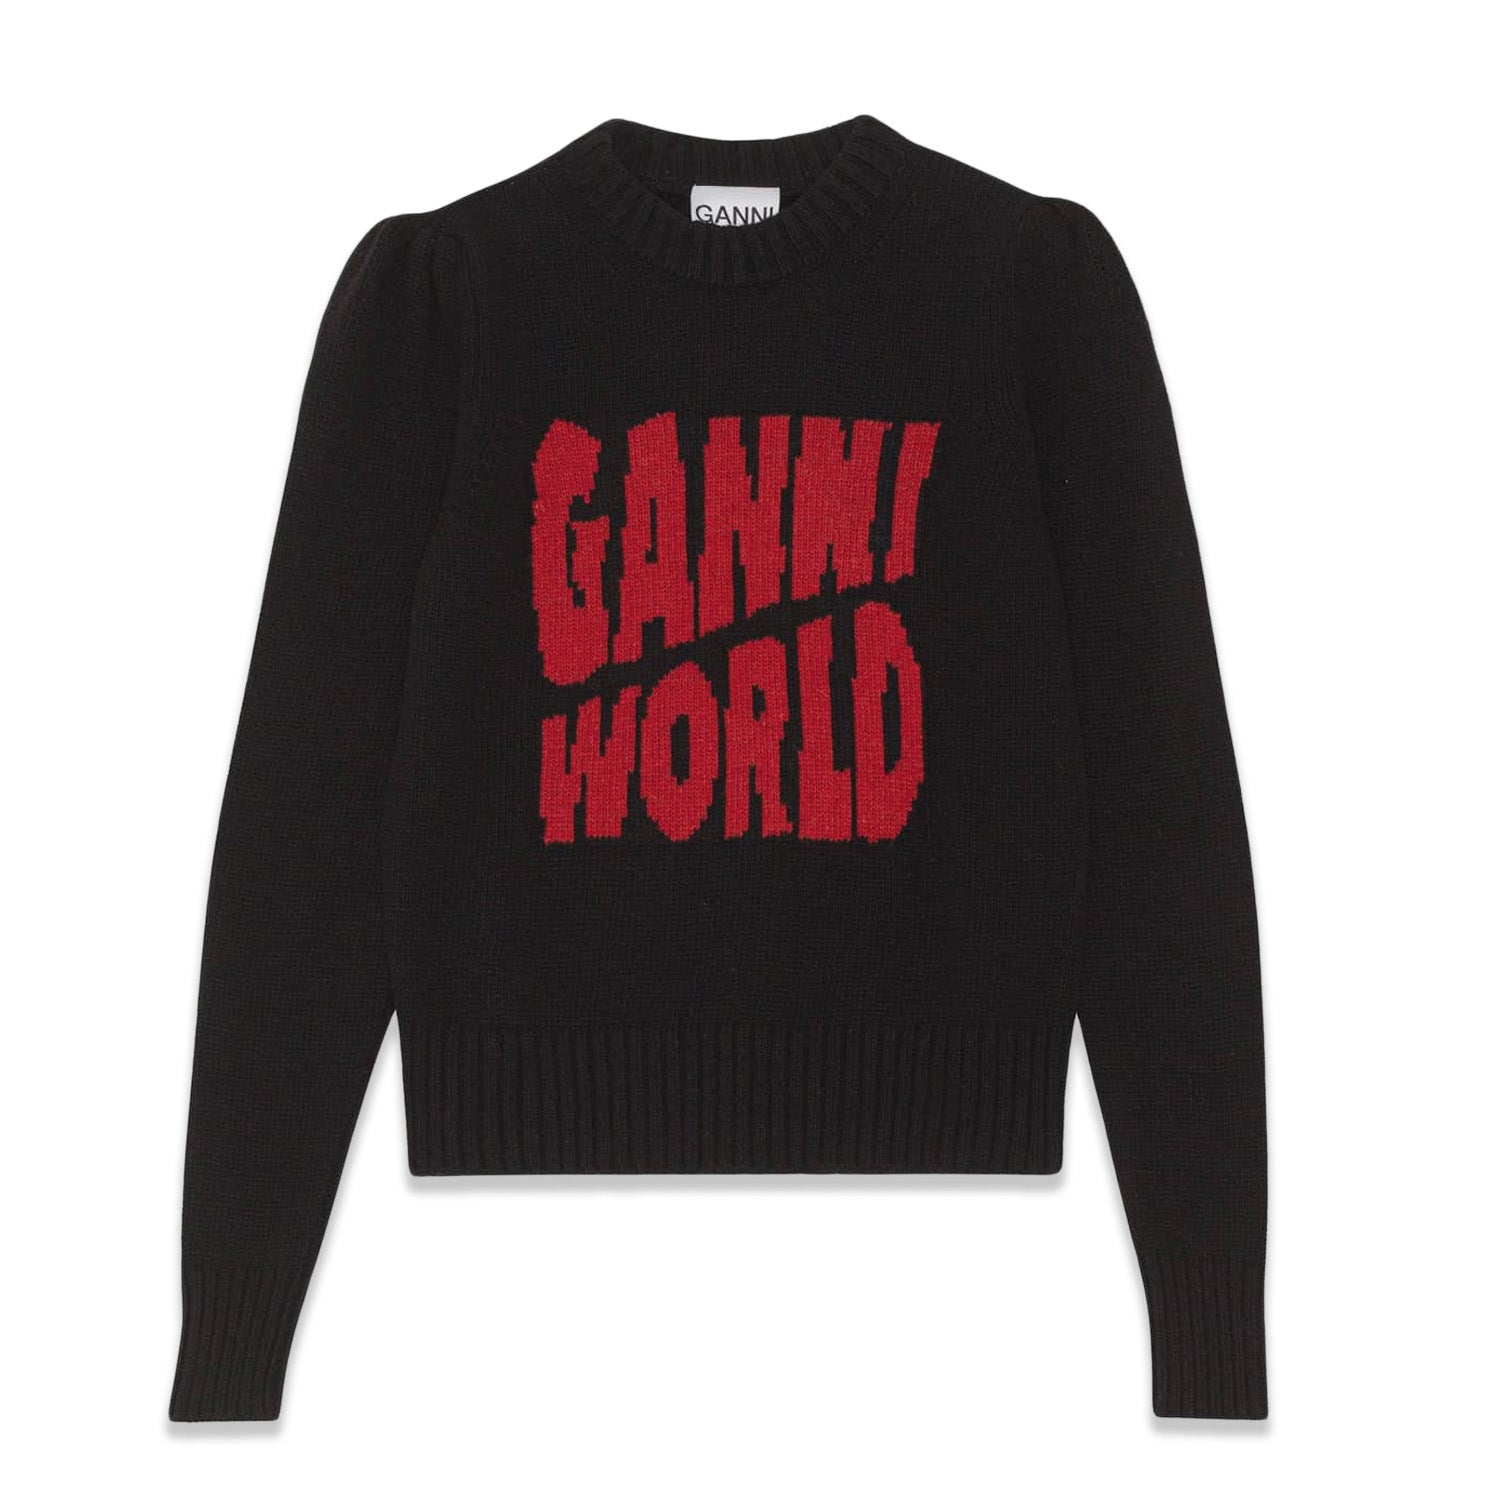 Ganni Puffed Shoulder 'Ganni World' Sweater 'Black'